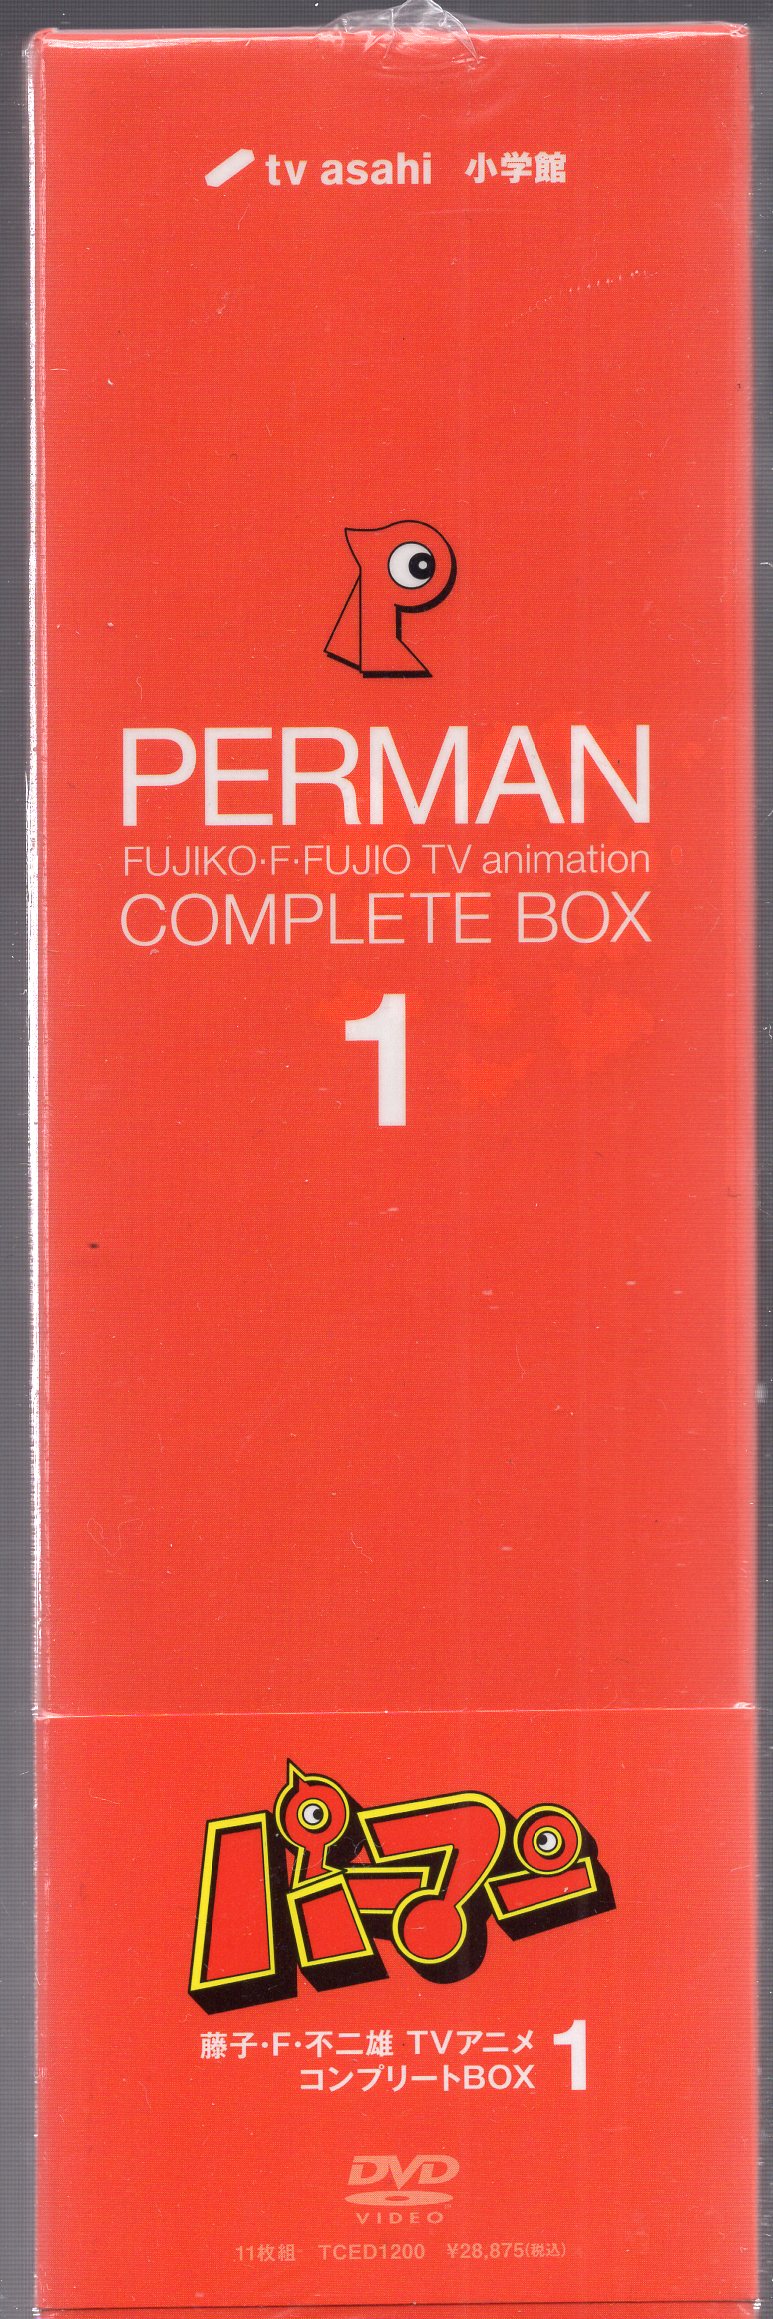 買付品DVD パーマン Complete Box 4 は行